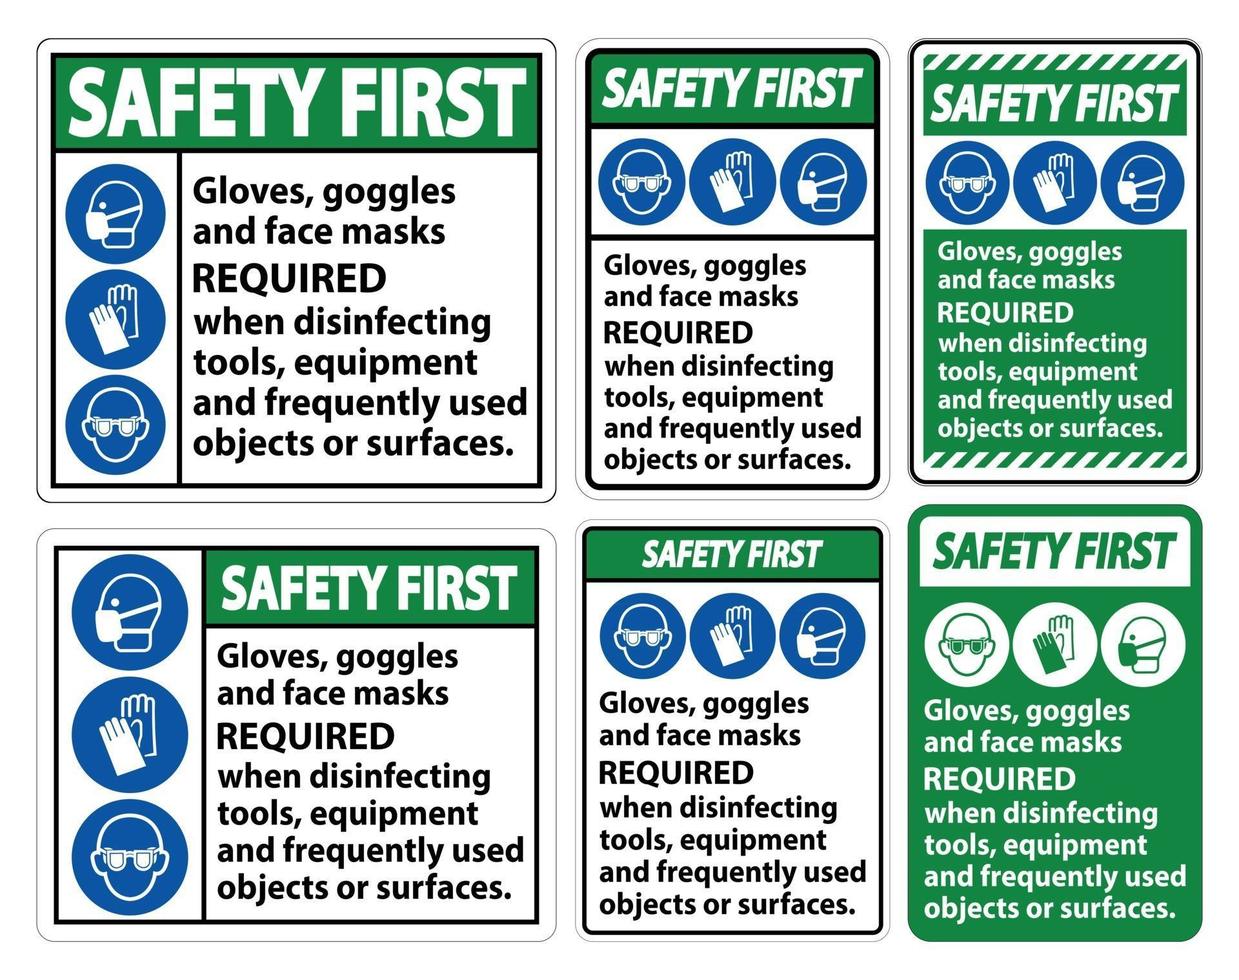 seguridad primero guantes, gafas y mascarillas requeridas firmar sobre fondo blanco, ilustración vectorial eps.10 vector